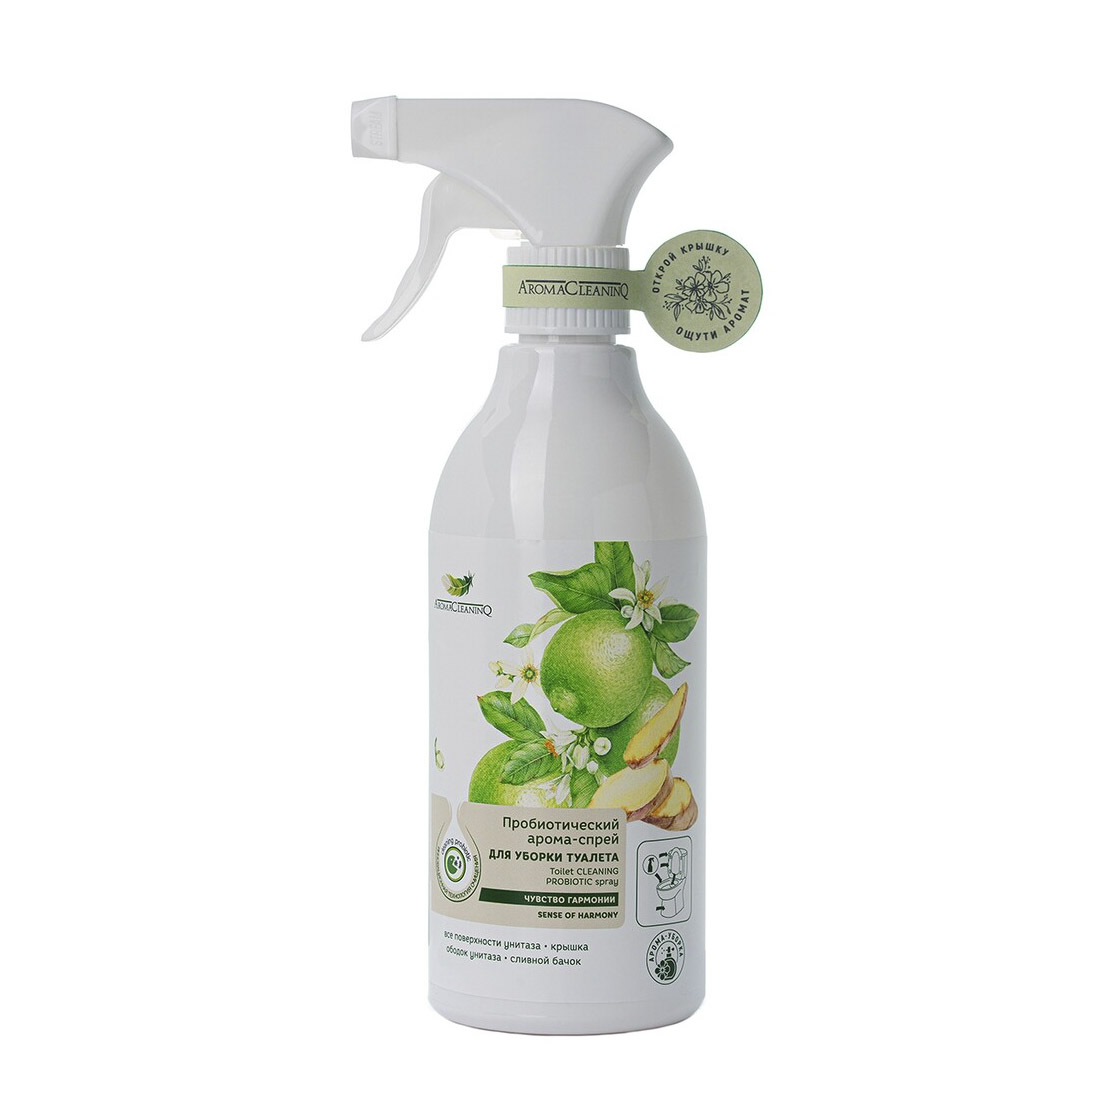 Пробиотический арома-спрей для уборки ванной комнаты AromaCleaninQ  Чувство гармонии Лайм и Имбирь 500 мл